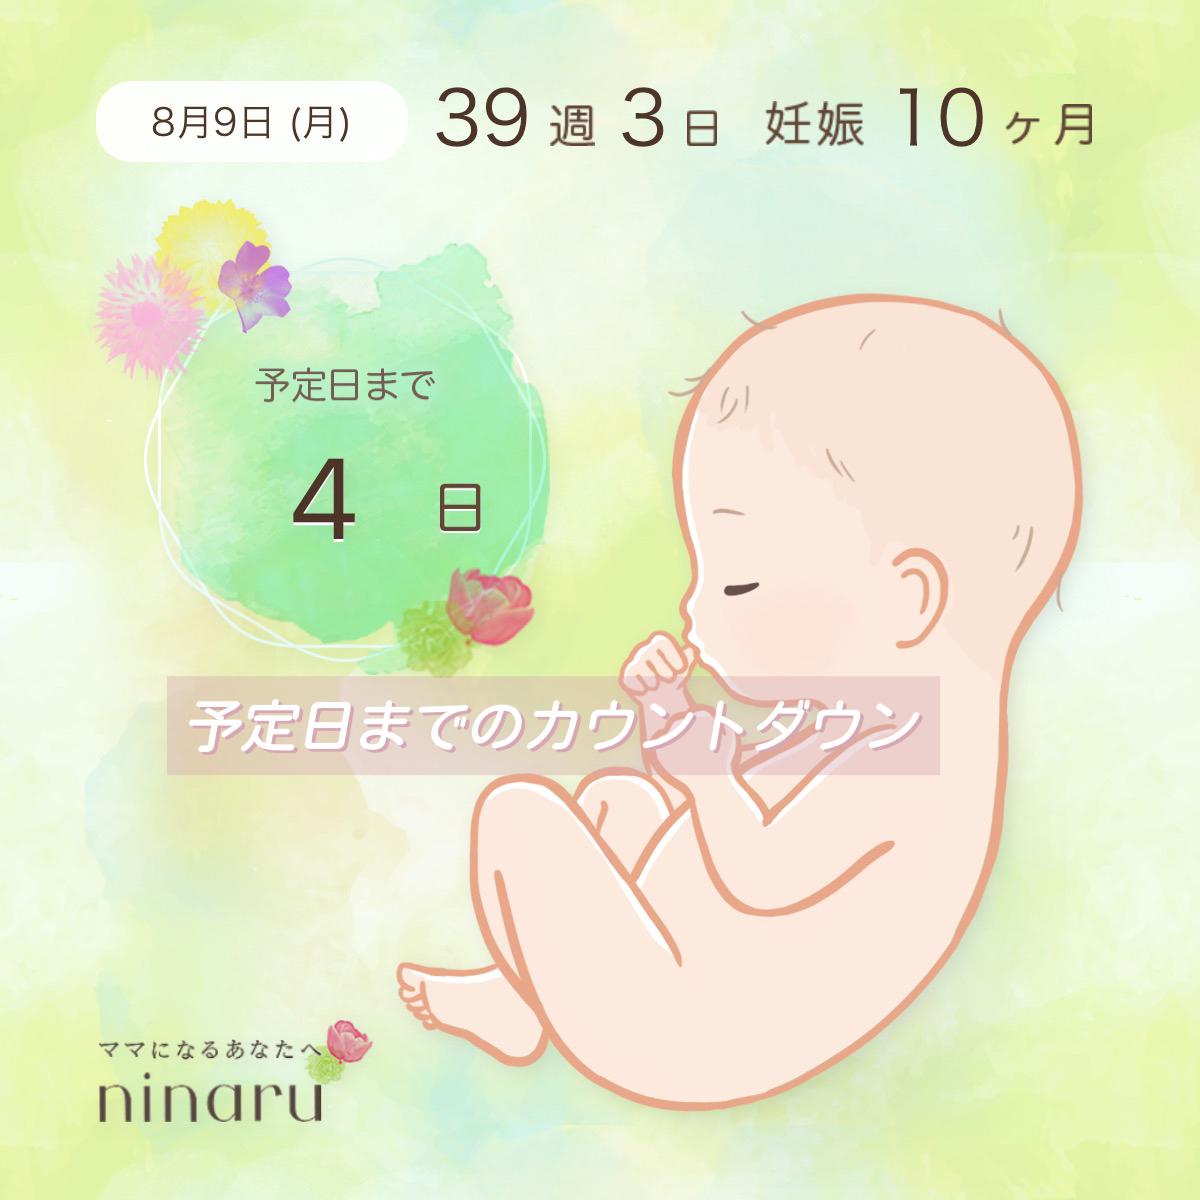 臨月妊婦 出産予定日2日過ぎ Jmr0815が投稿したフォトブック Lemon8